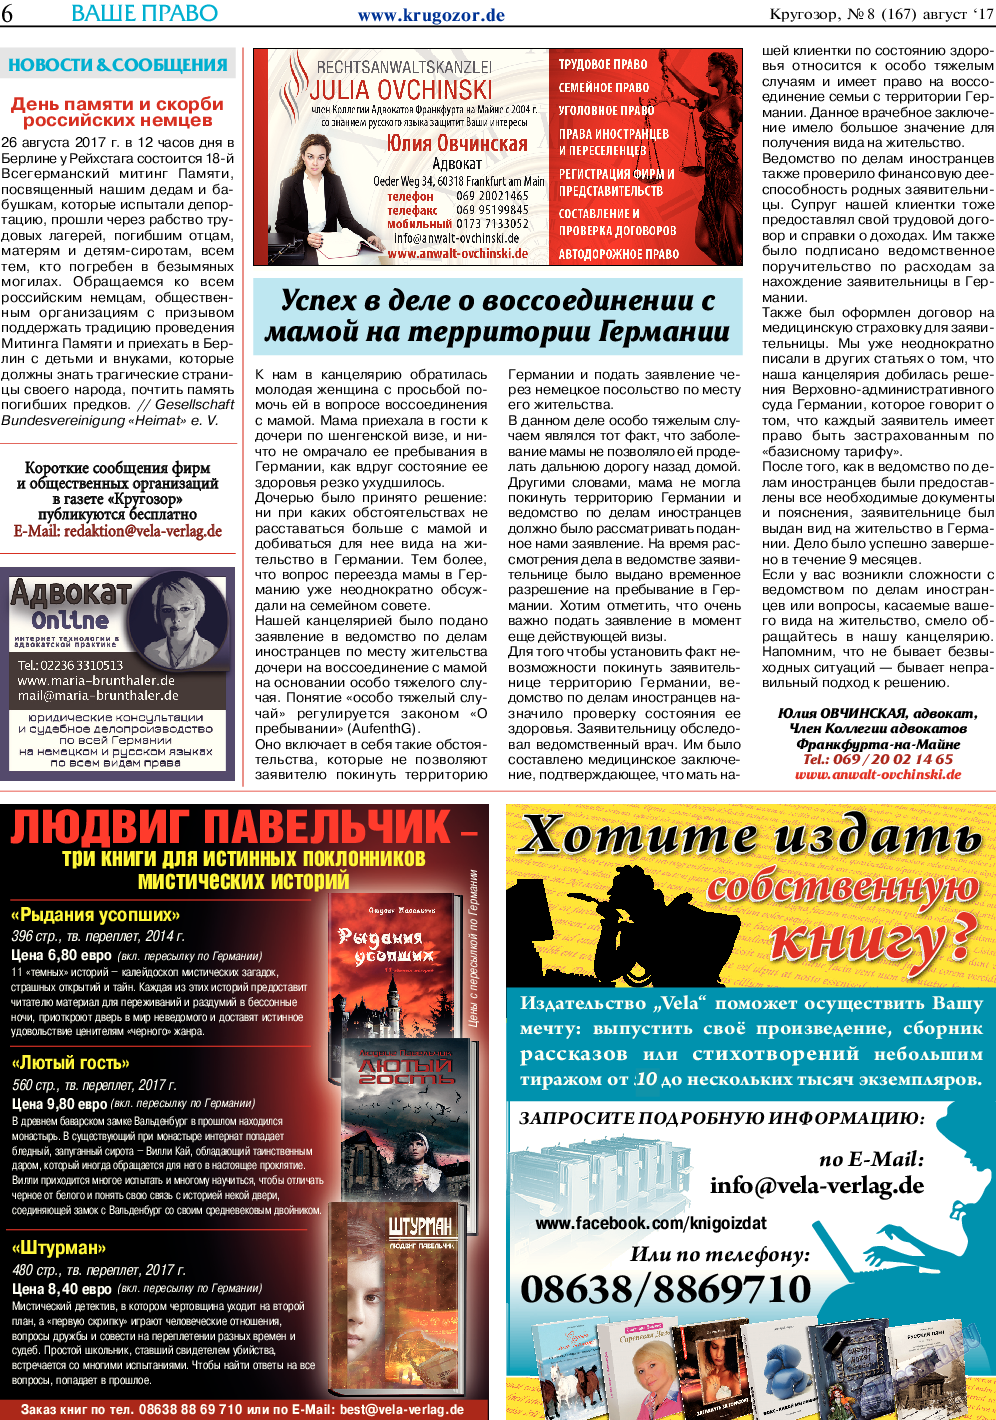 Кругозор, газета. 2017 №8 стр.6